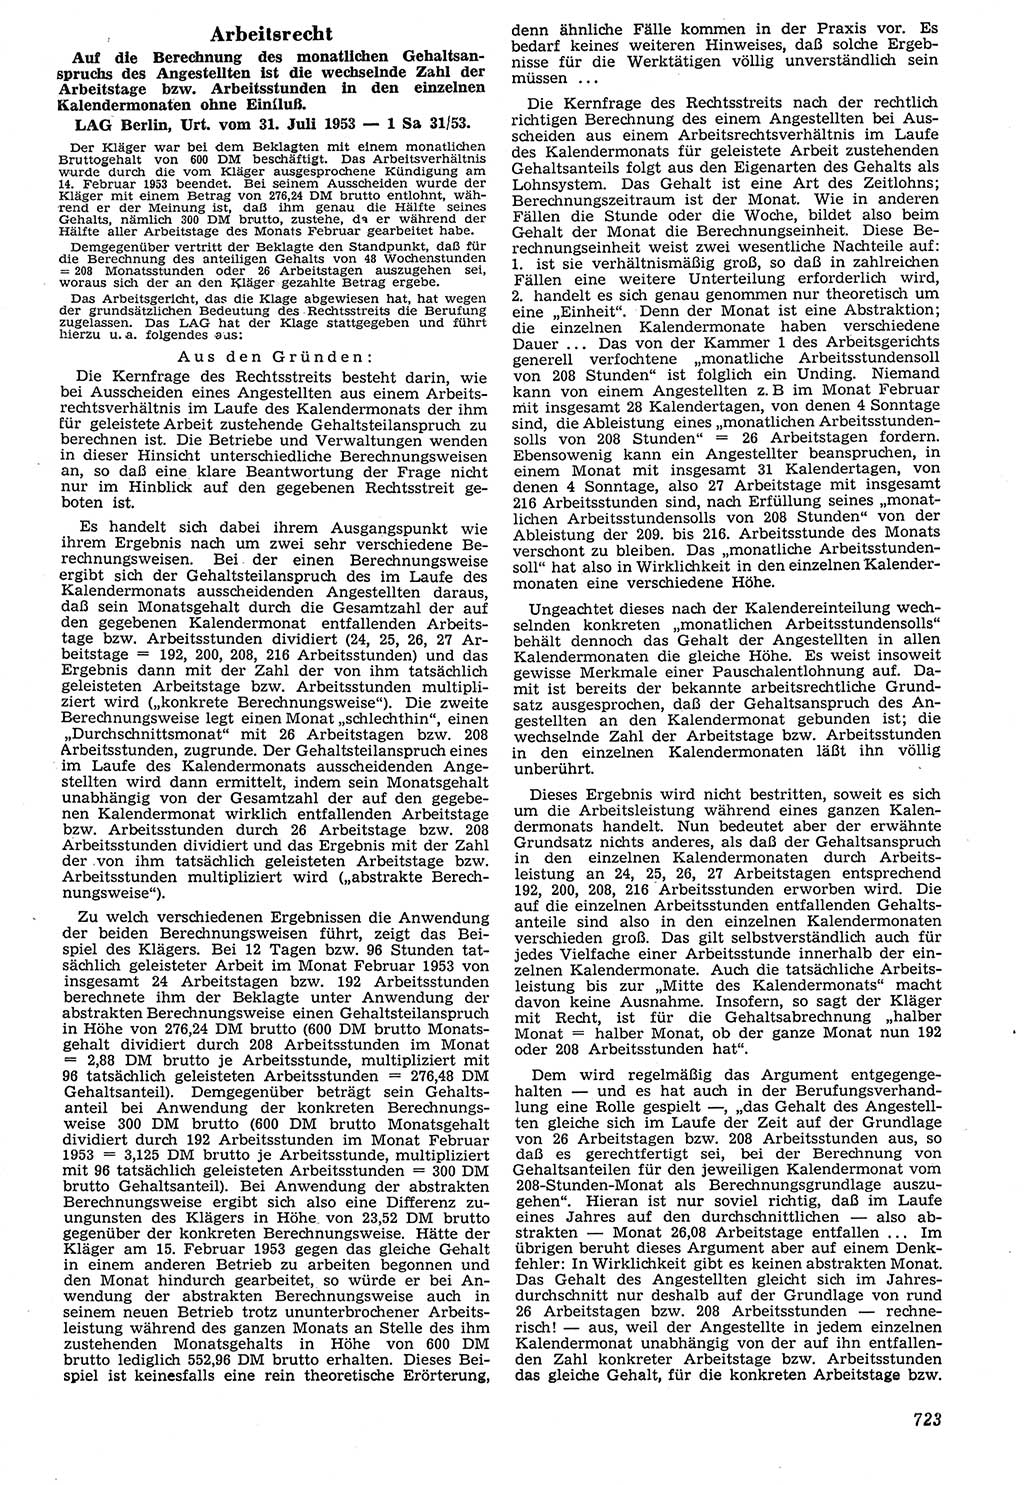 Neue Justiz (NJ), Zeitschrift für Recht und Rechtswissenschaft [Deutsche Demokratische Republik (DDR)], 7. Jahrgang 1953, Seite 723 (NJ DDR 1953, S. 723)